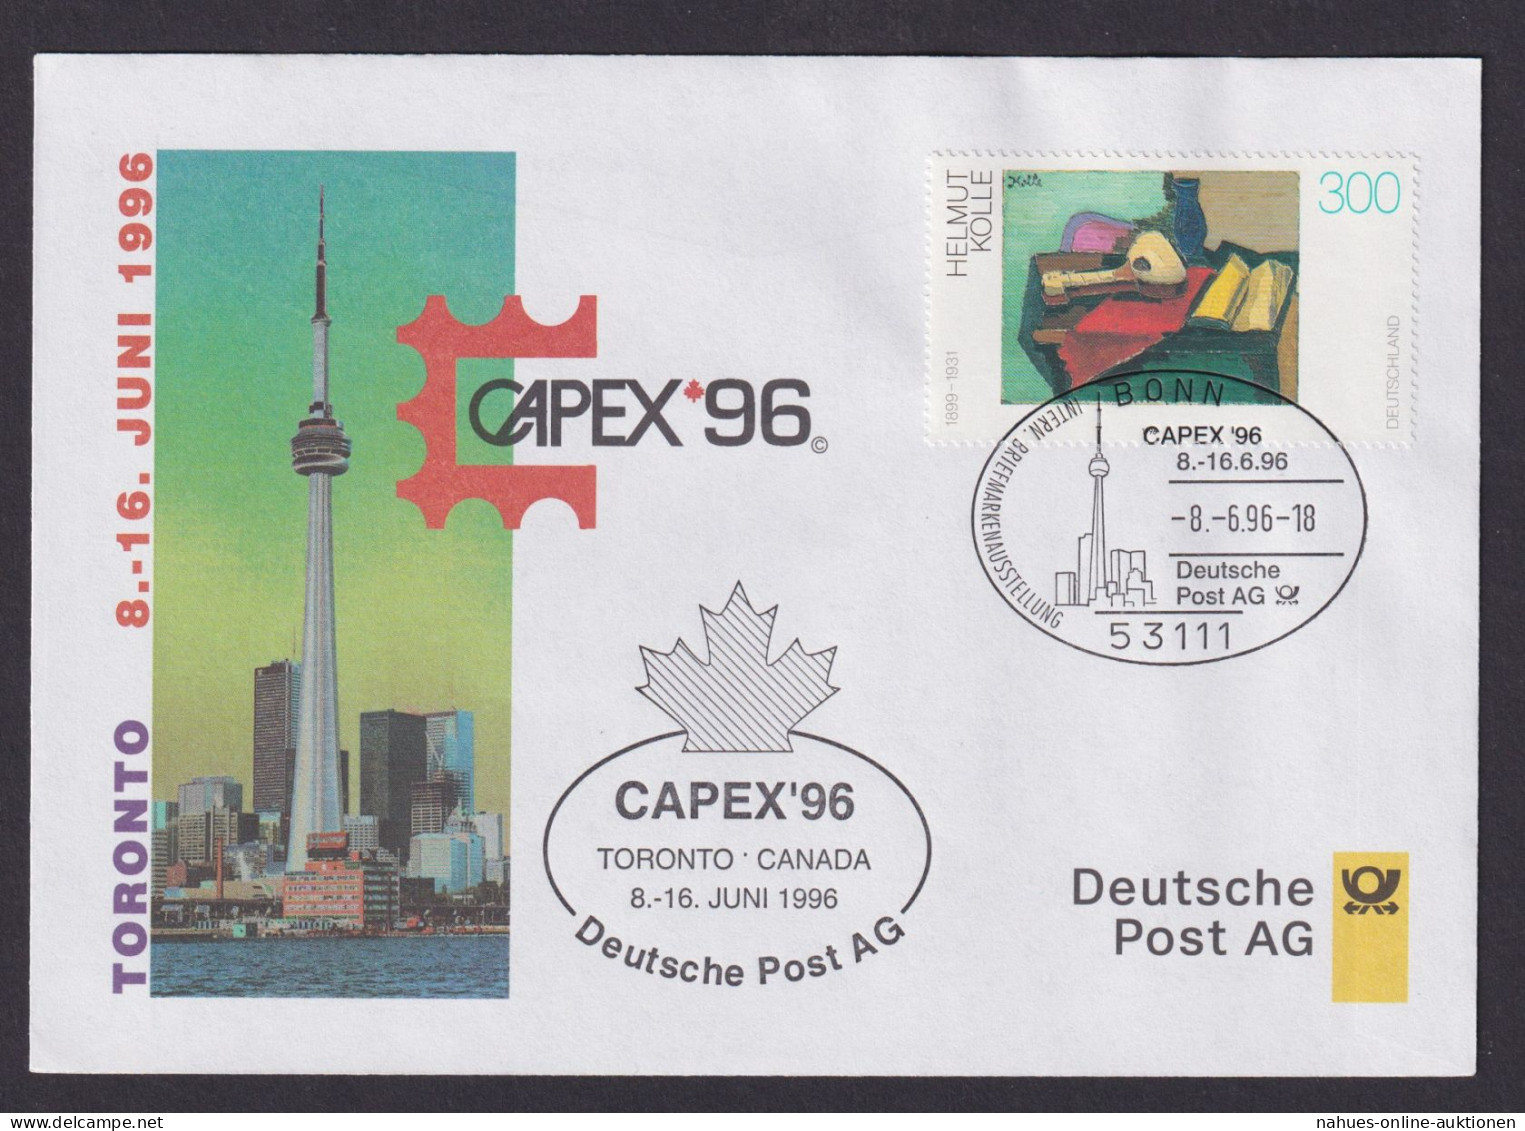 Philatelie Briefmarkenausstellung Capex Toronto Kanada 1996 SST Deutsche Post AG - Covers & Documents